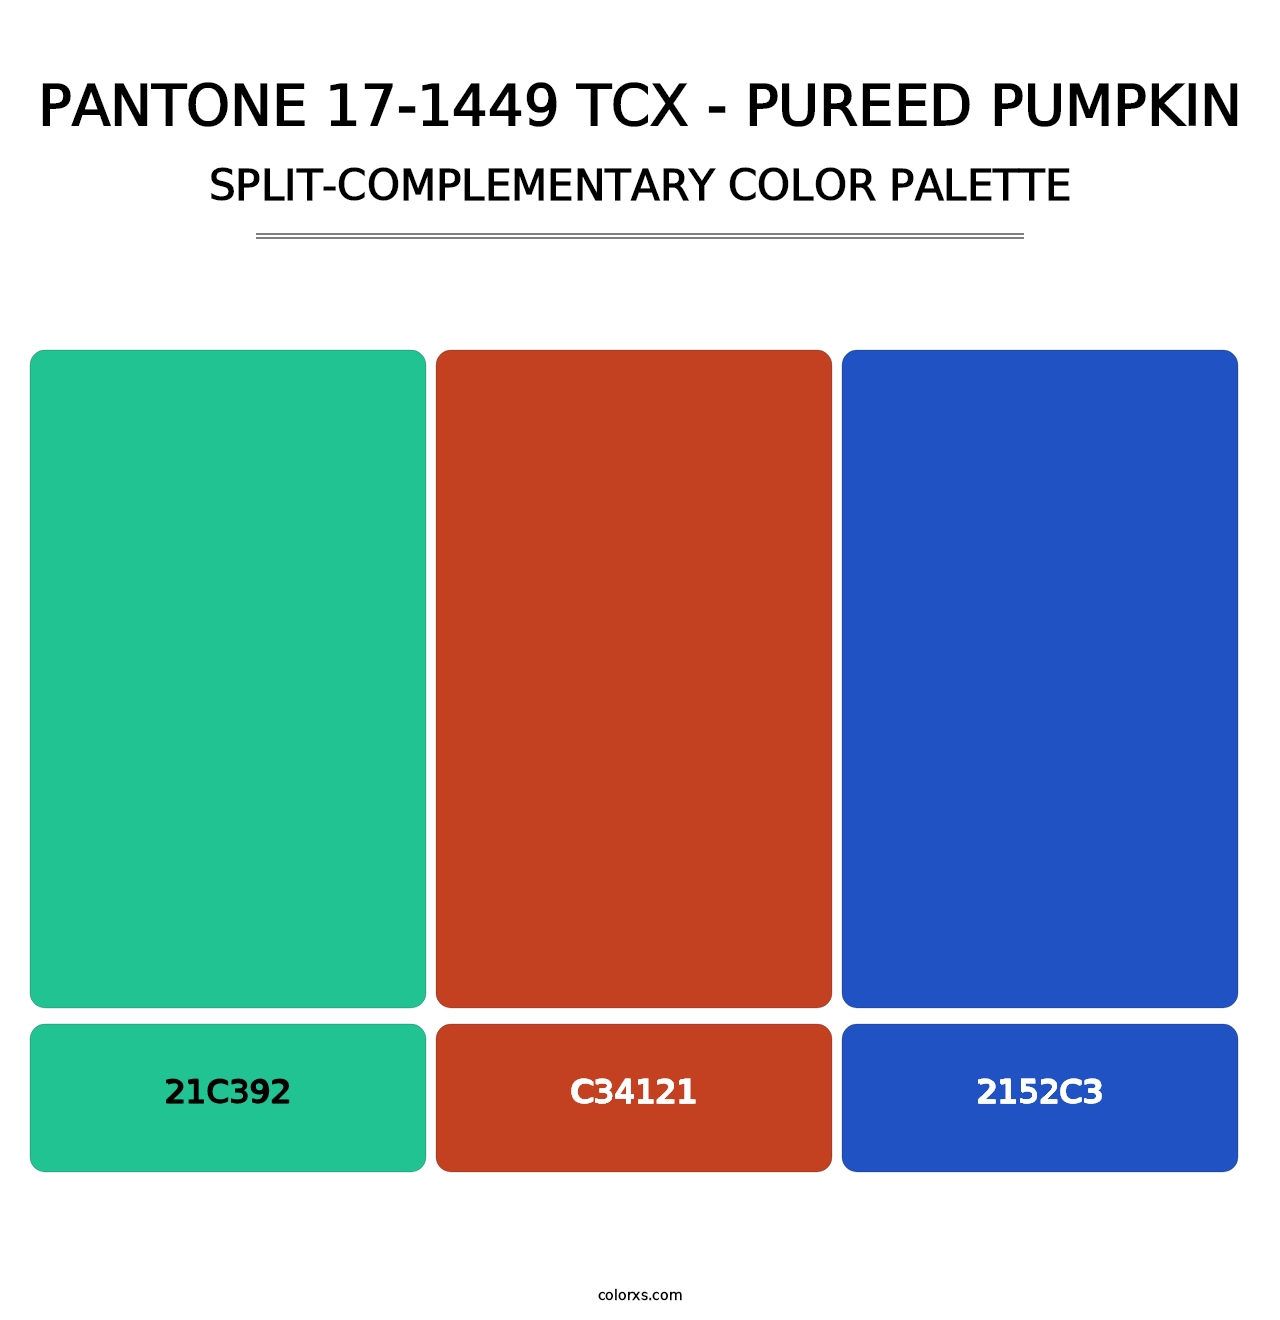 PANTONE 17-1449 TCX - Pureed Pumpkin - Split-Complementary Color Palette